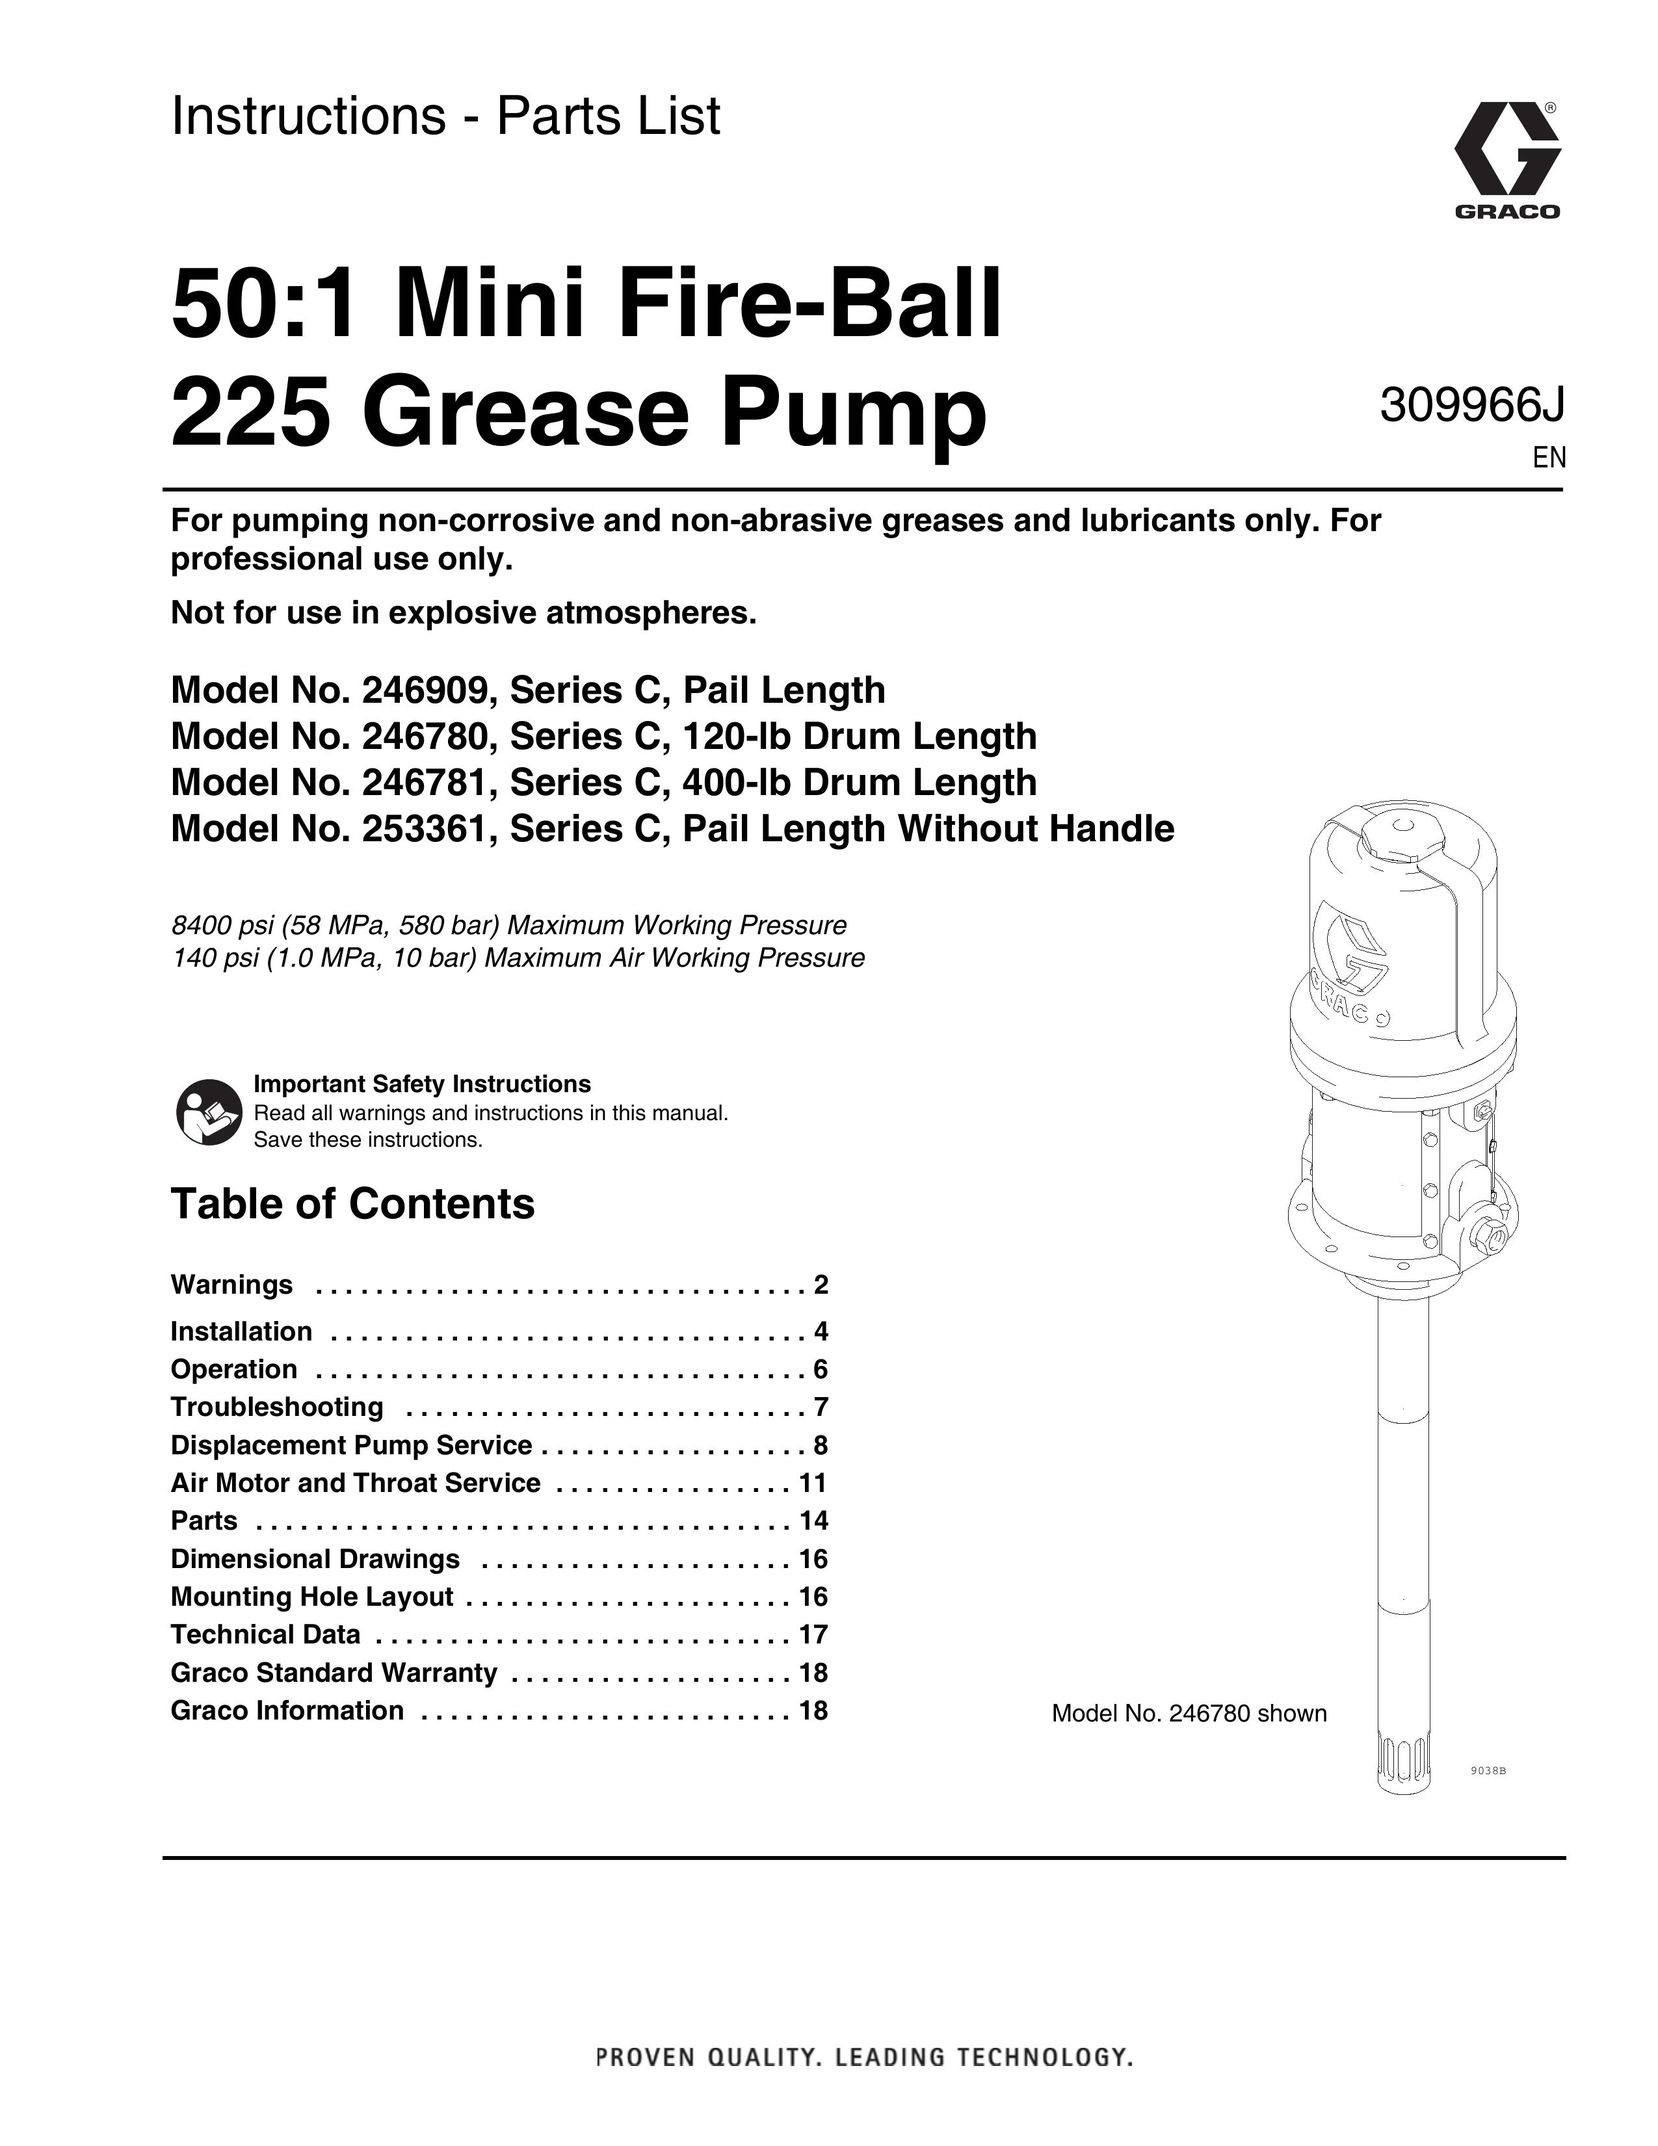 Graco 246780 Heat Pump User Manual